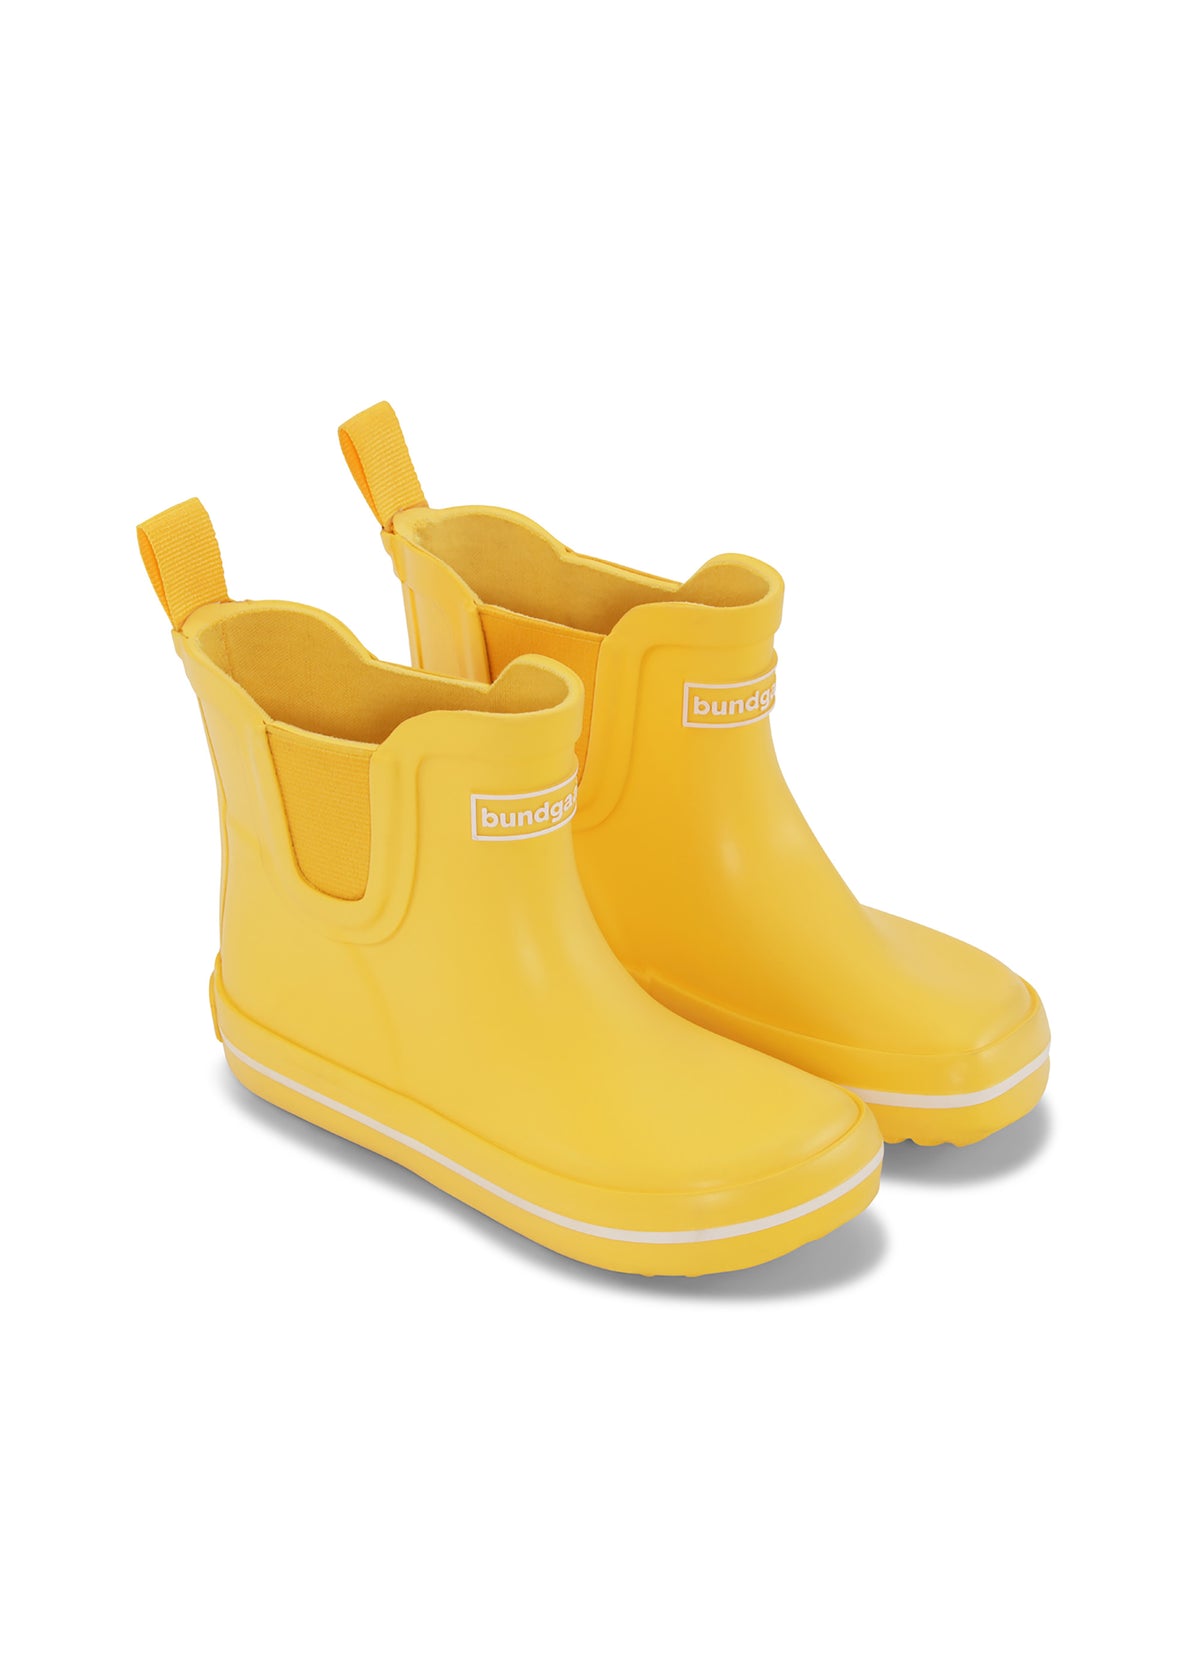 Wellies - short shaft, yellow, Bundgaard Zero Heel